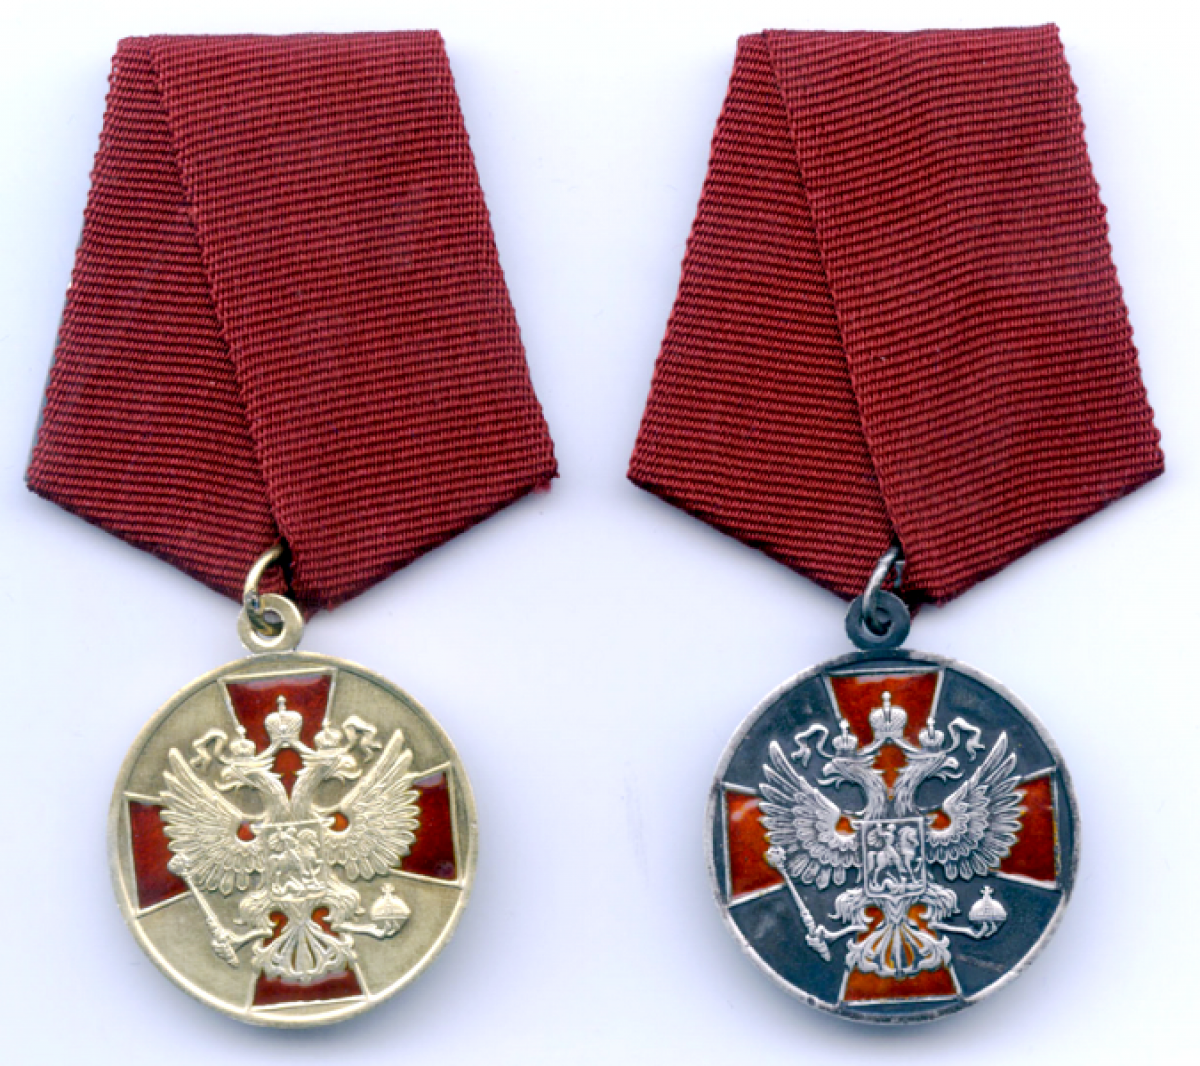 Какие сейчас ордена. Медаль за заслуги перед Отечеством РФ. Медаль ордена за заслуги перед Отечеством. Медаль ордена «за заслуги перед Отечеством» i степени с мечами. Медаль ордена за заслуги перед Отечеством 2 степени.